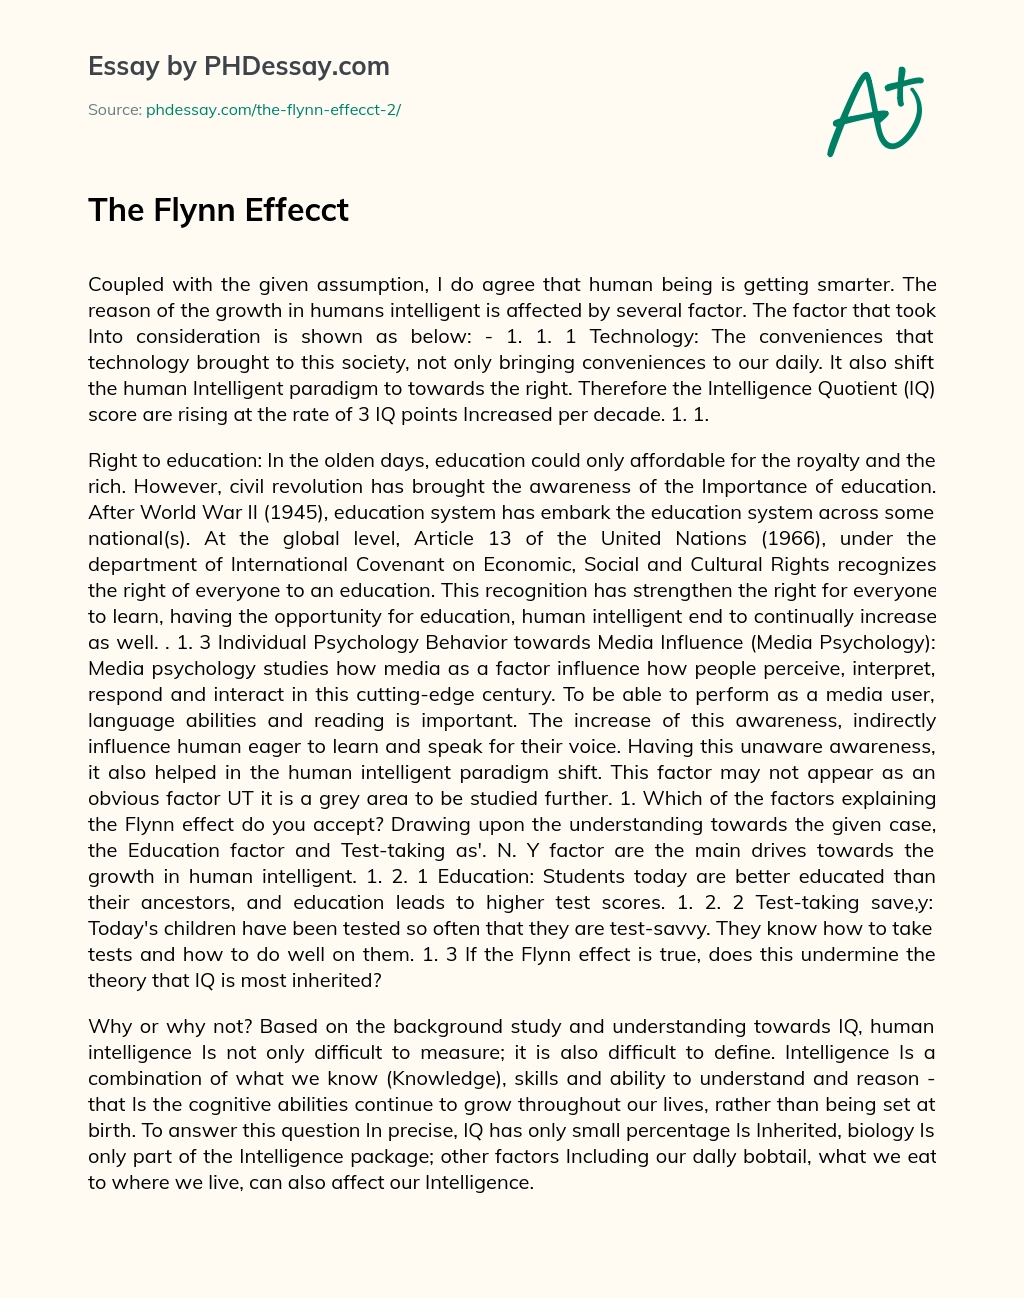 The Flynn Effecct essay